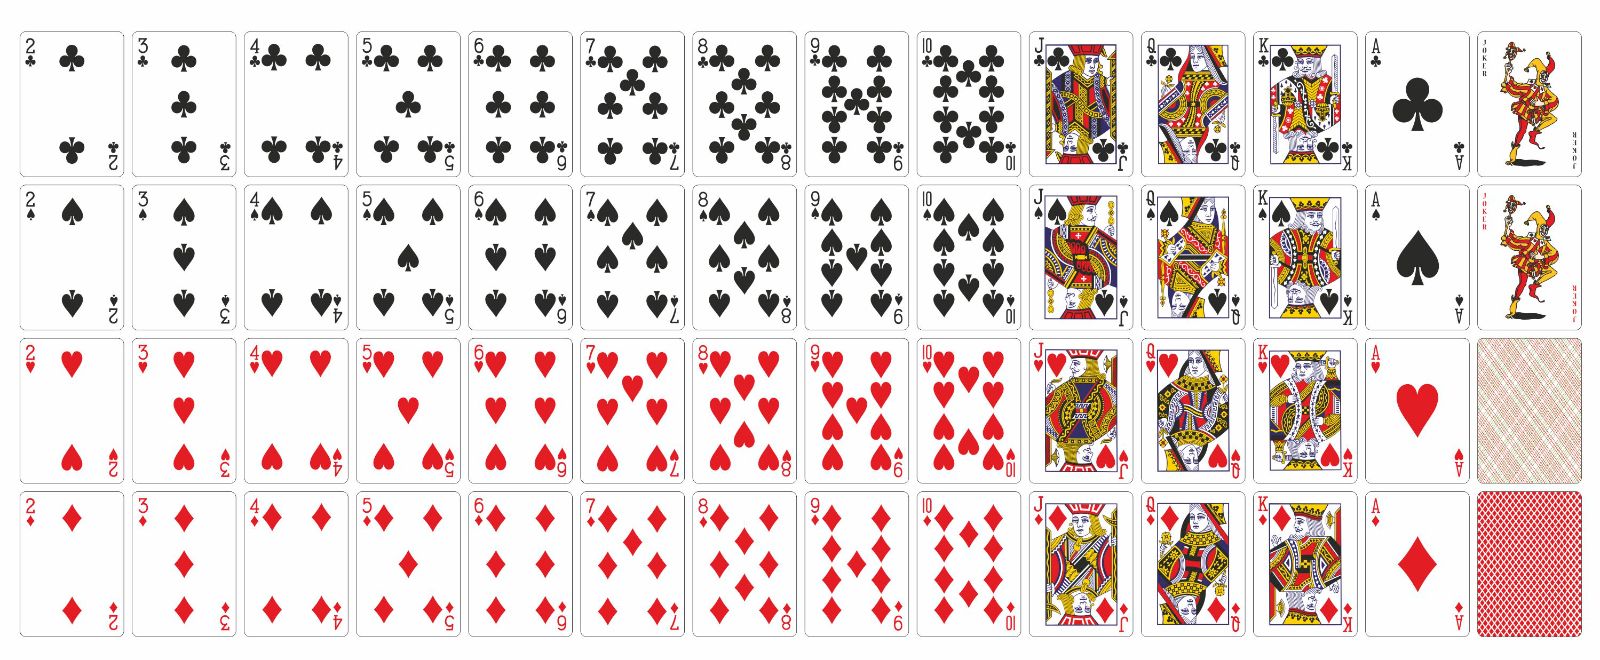 Карточная колода 52 карты с Джокером